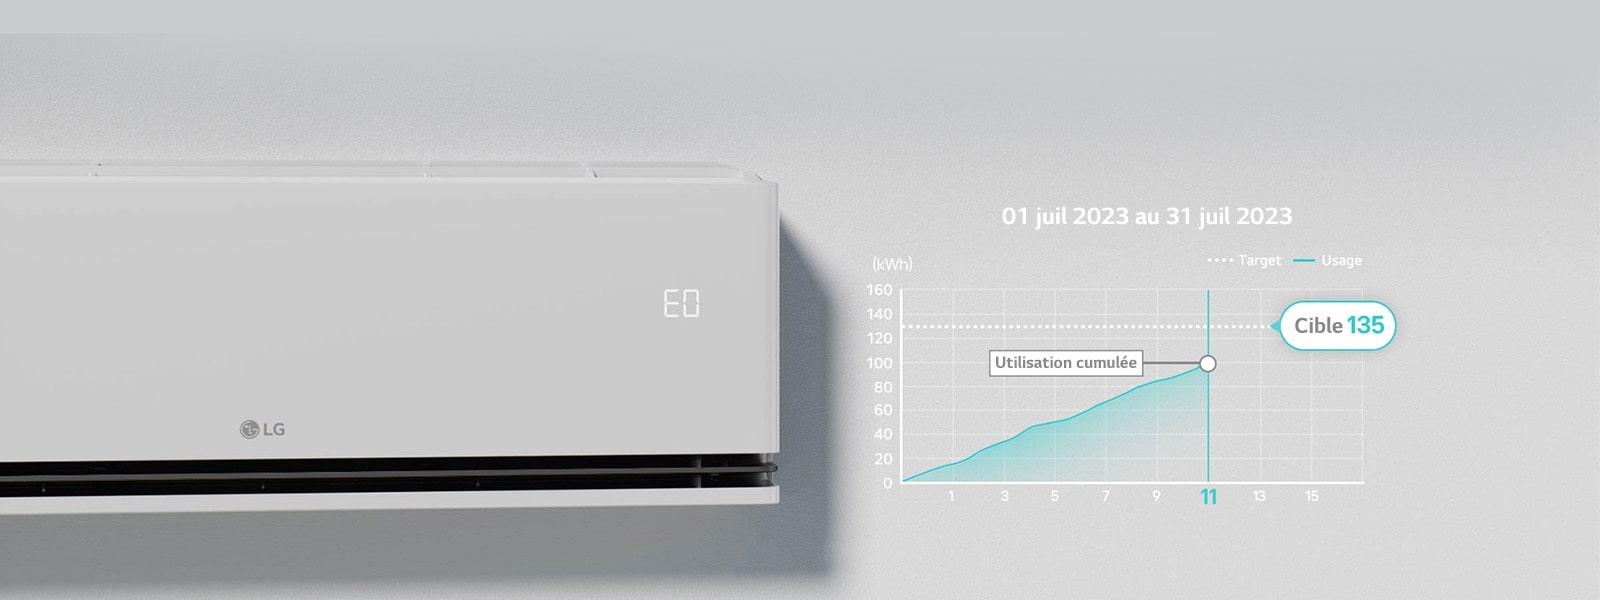 « EO » est selectionné sur le panneau du climatiseur quand la fonction kW Manager est en opération.	